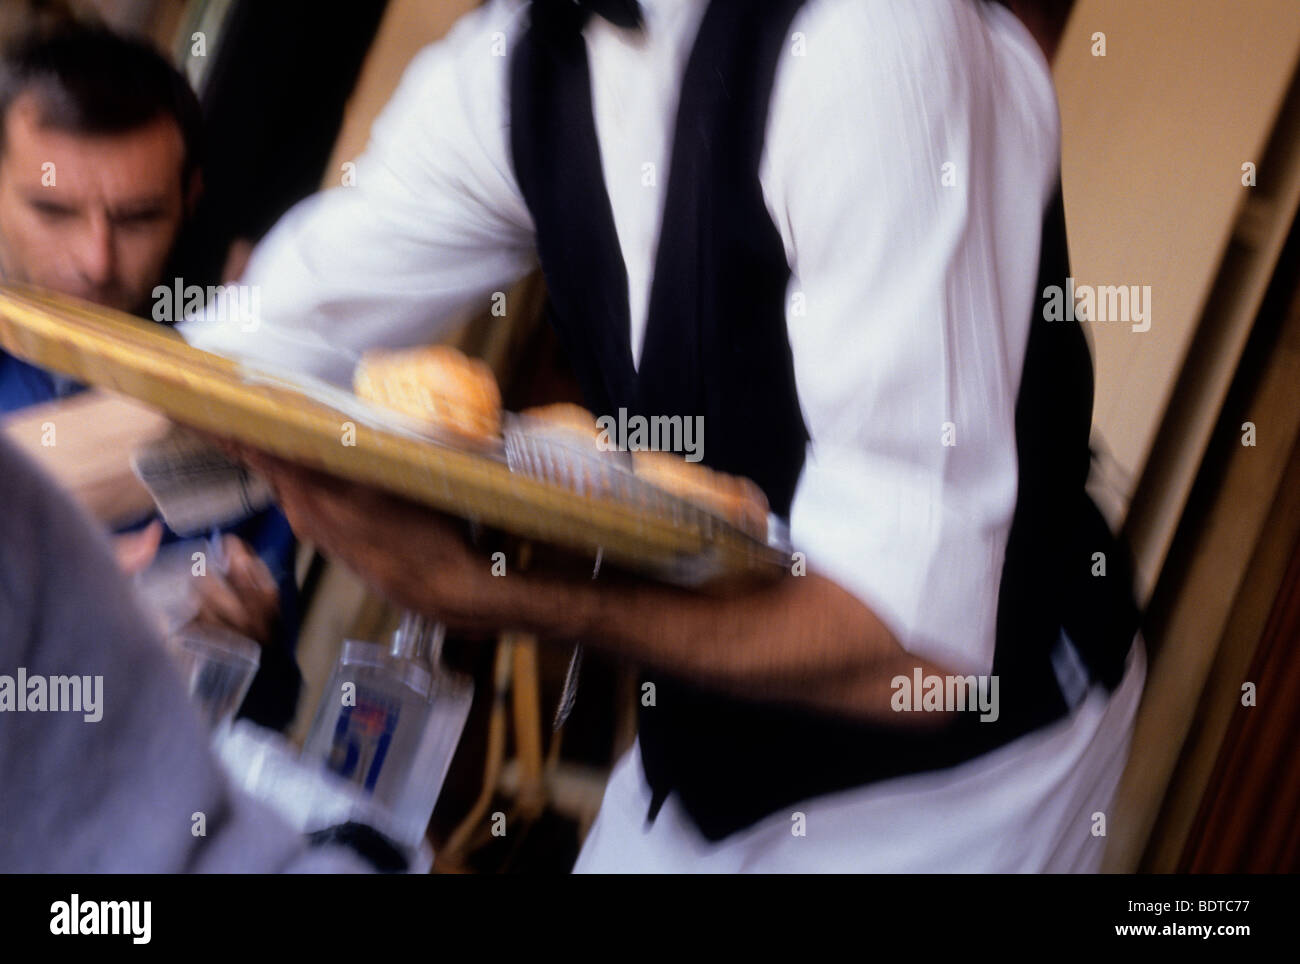 Paris mi-section de serveur dans un gilet noir, chemise blanche et tablier équilibrant un plateau avec de la nourriture. Petit déjeuner servi dans un bistro, un café, une brasserie Banque D'Images